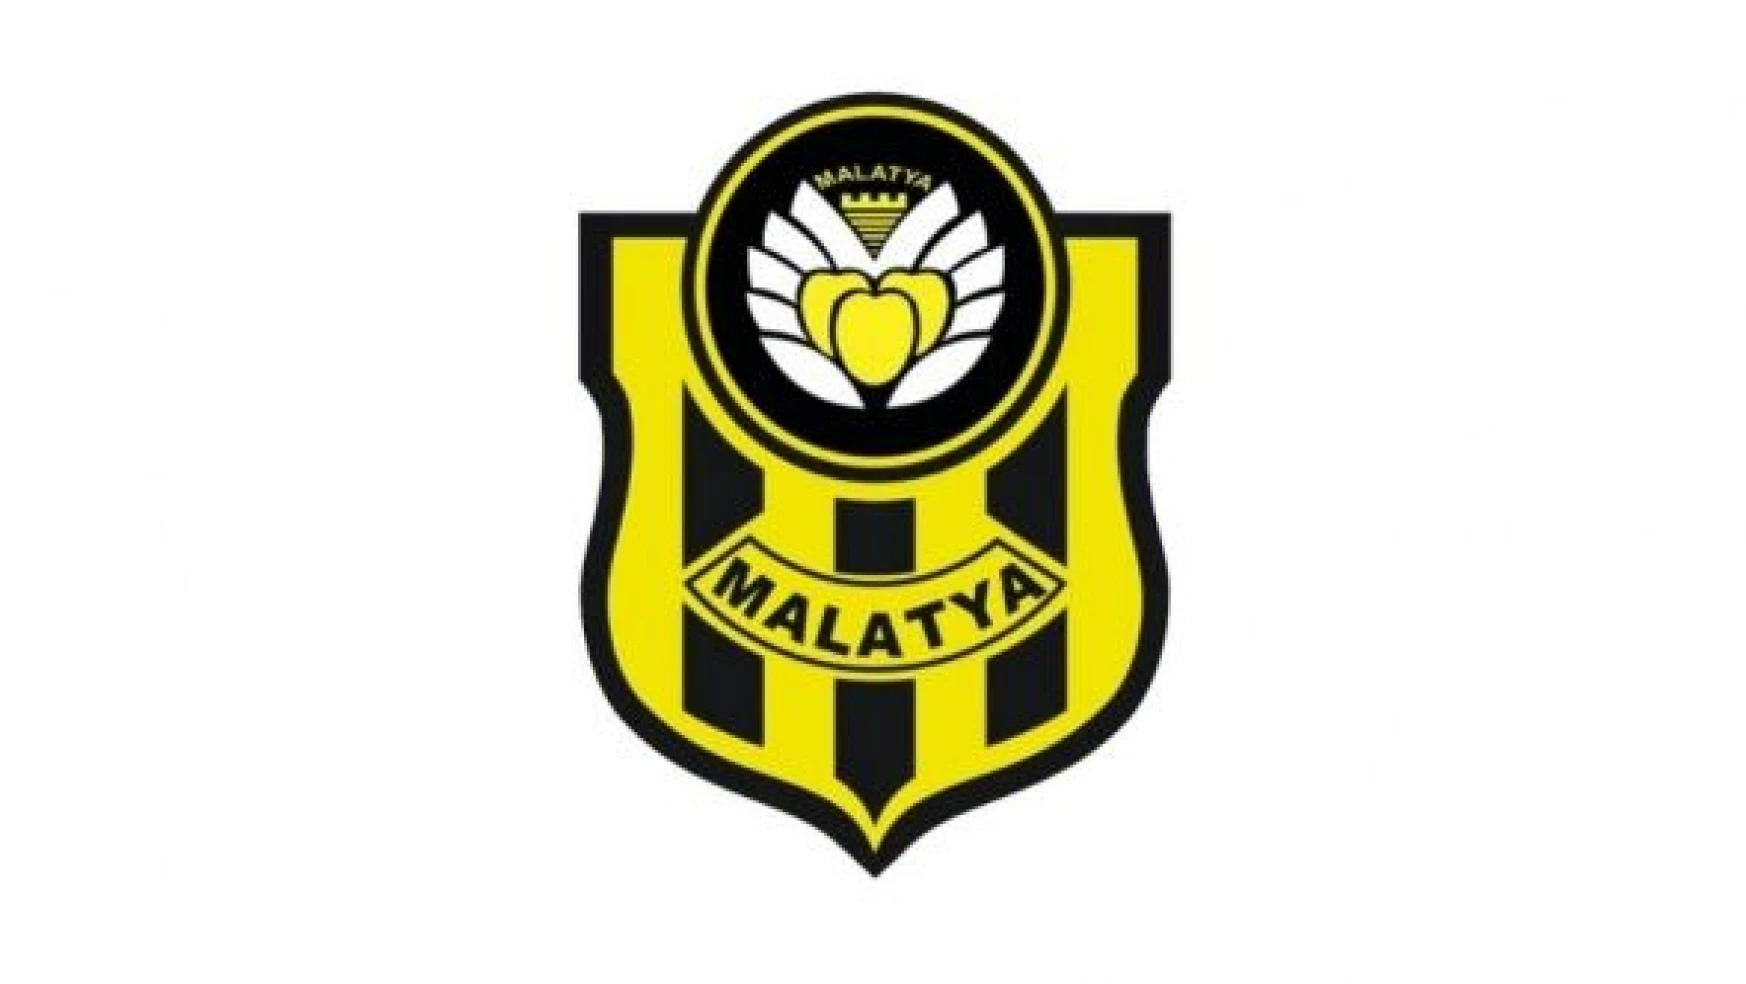 Yeni Malatyaspor, Sakaryaspor maçına hazırlanıyor